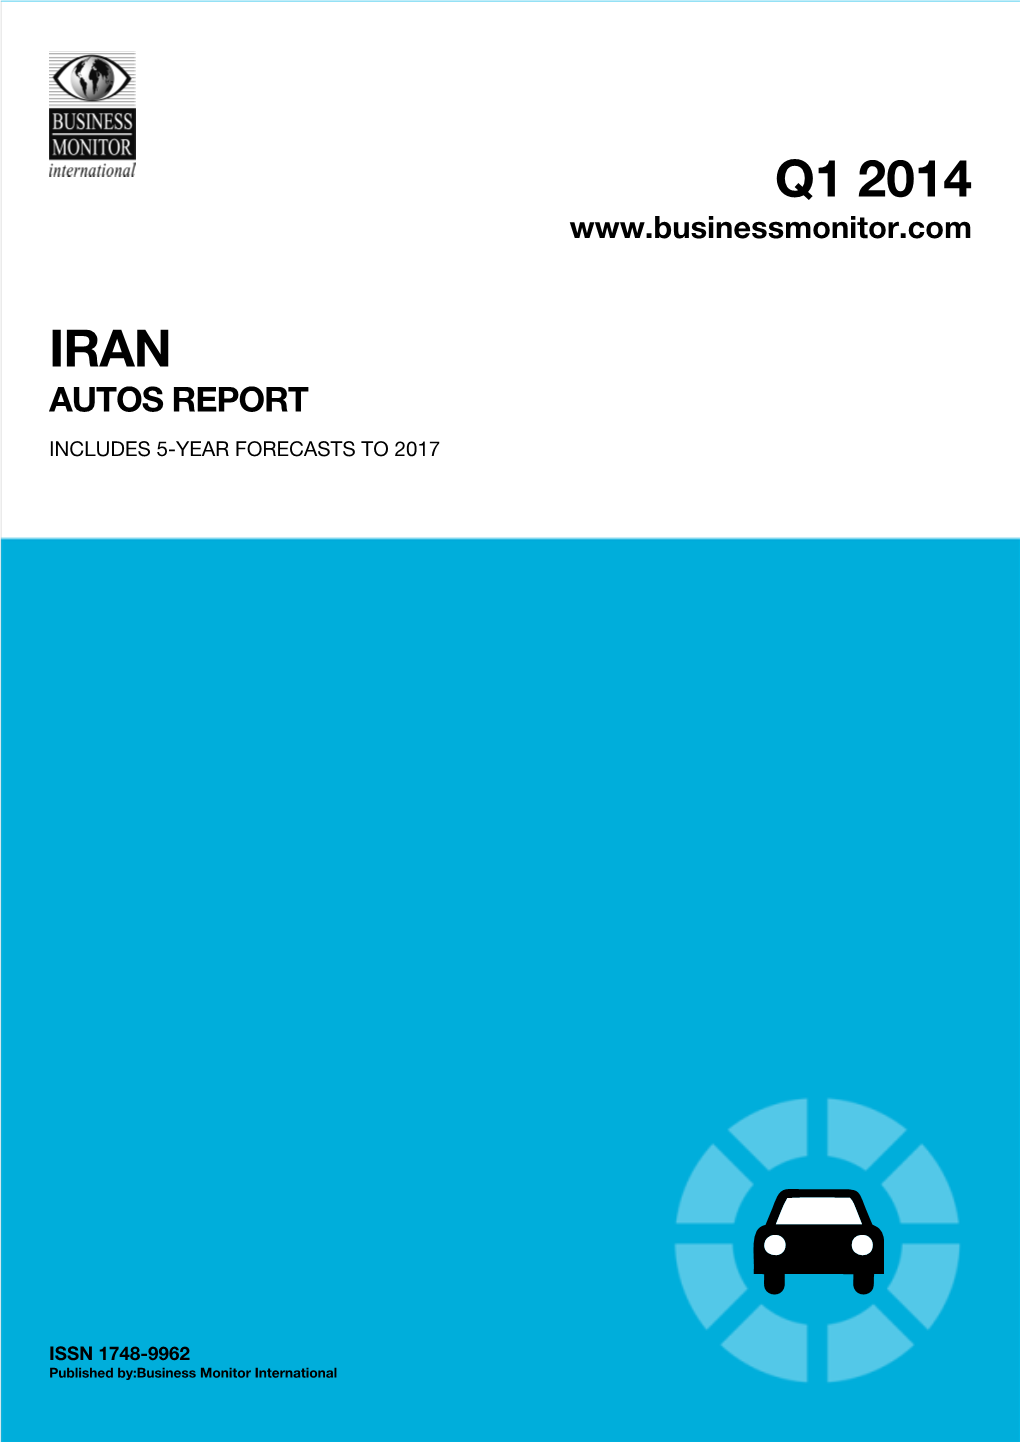 Q1 2014 Iran